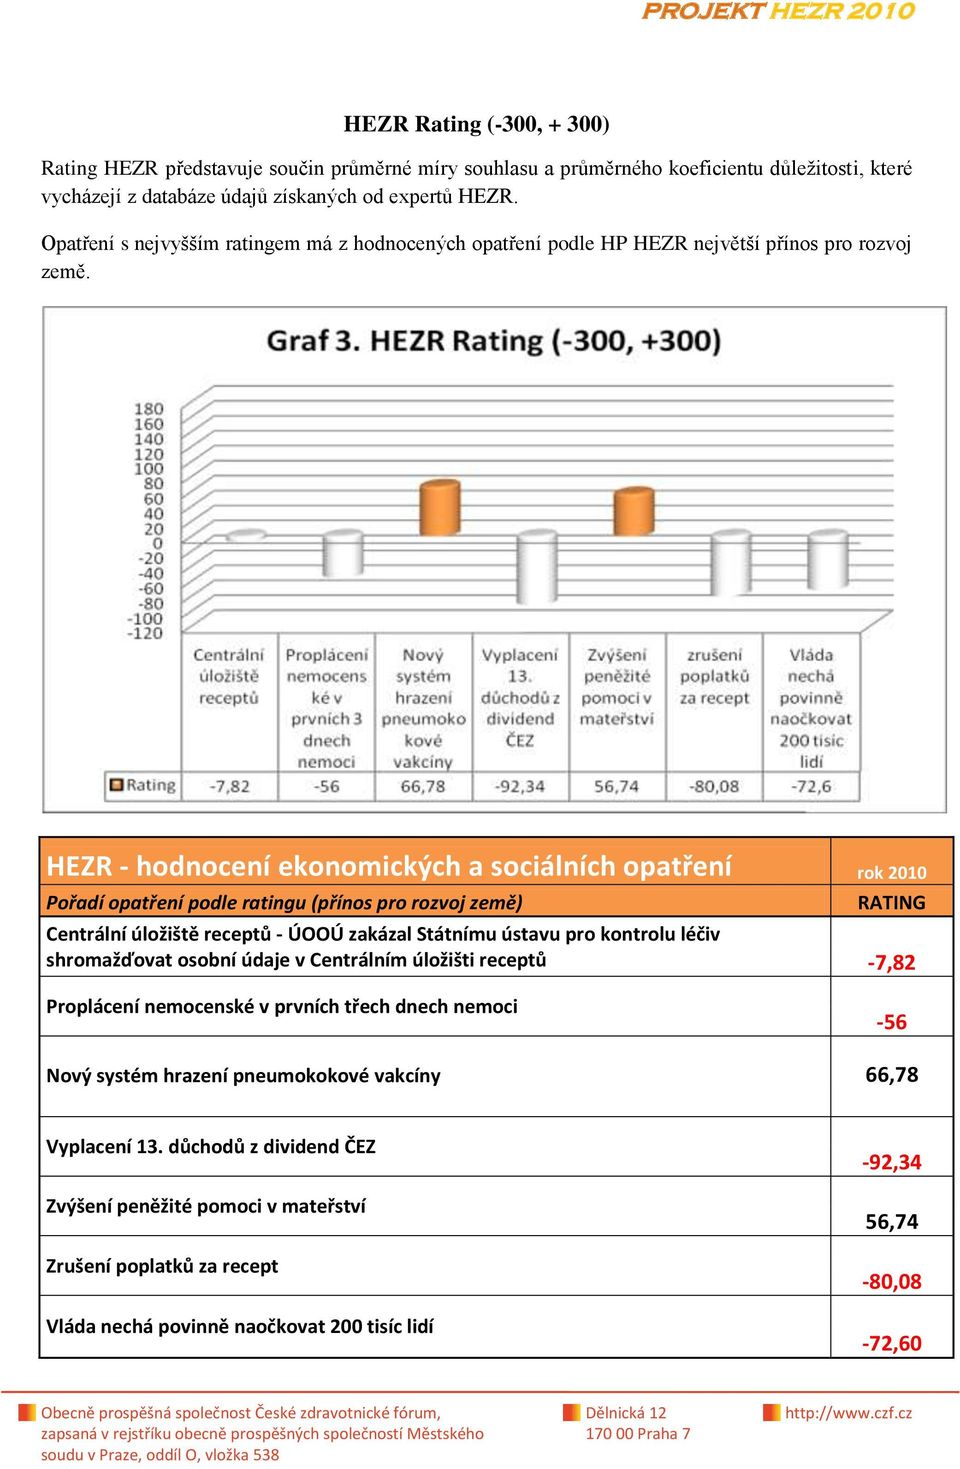 HEZR - hodnocení ekonomických a sociálních opatření rok 2010 Pořadí opatření podle ratingu (přínos pro rozvoj země) RATING Centrální úložiště receptů - ÚOOÚ zakázal Státnímu ústavu pro kontrolu léčiv